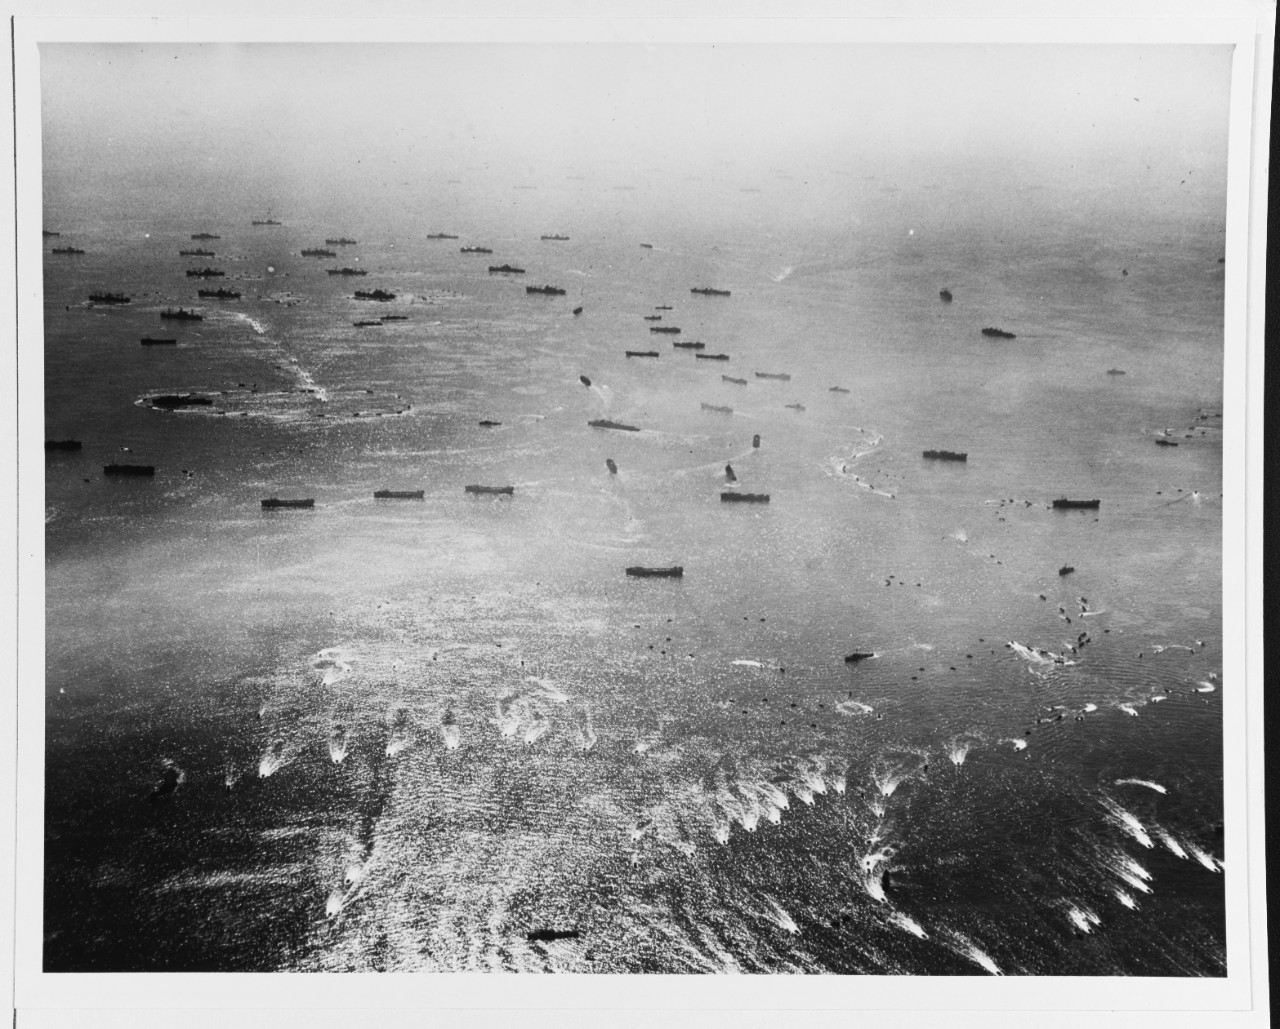 Leyte Landings, 20 October 1944.